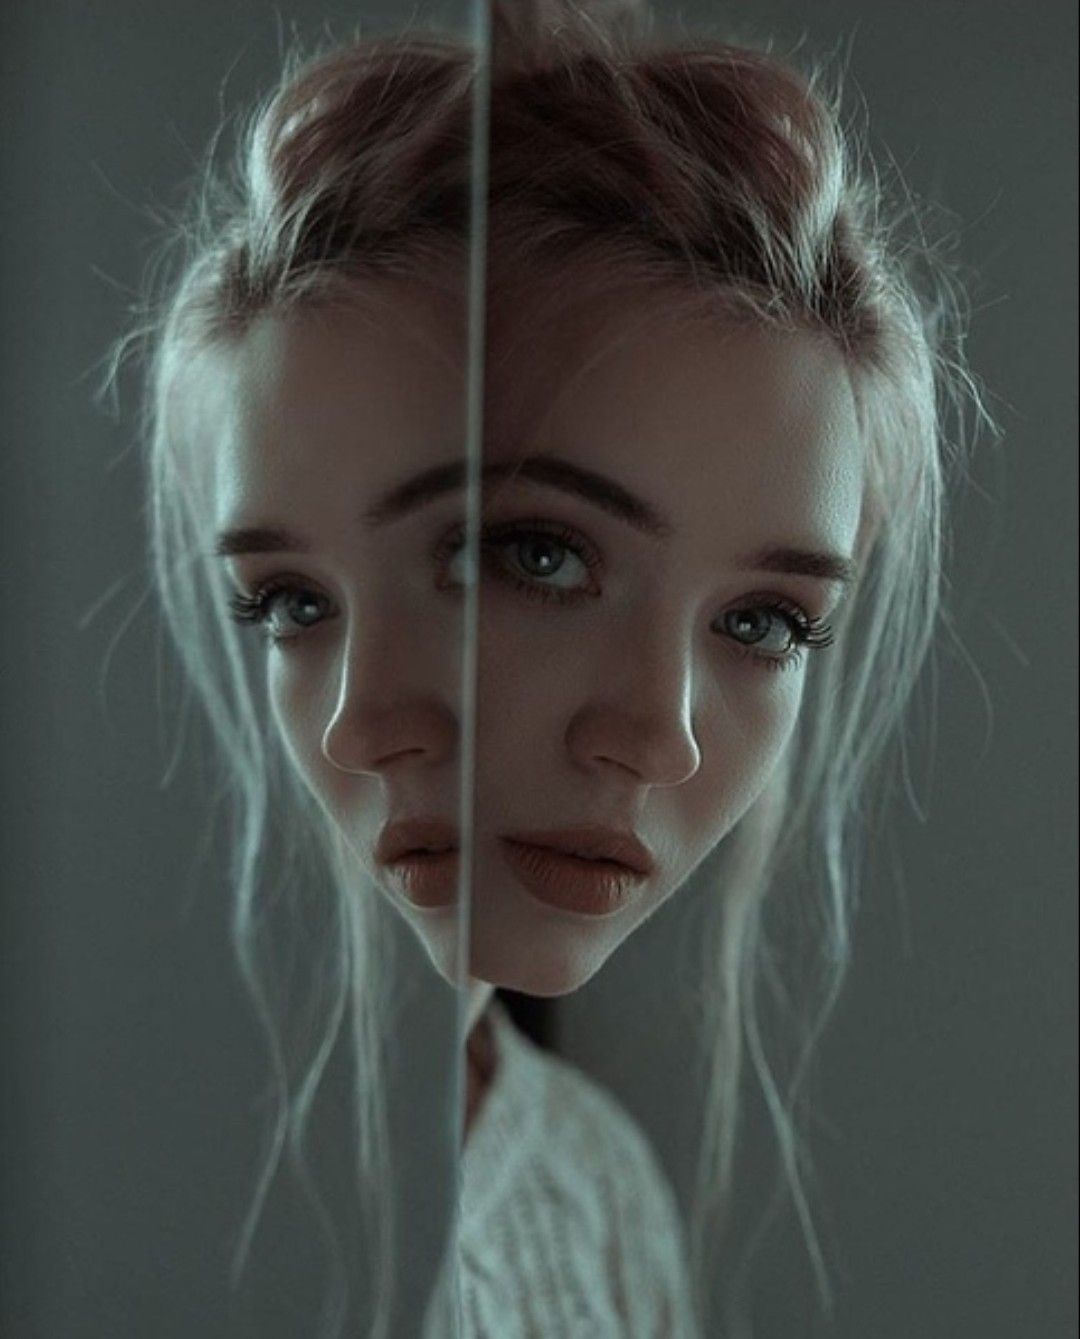 14 beauty Photoshoot mirror ideas